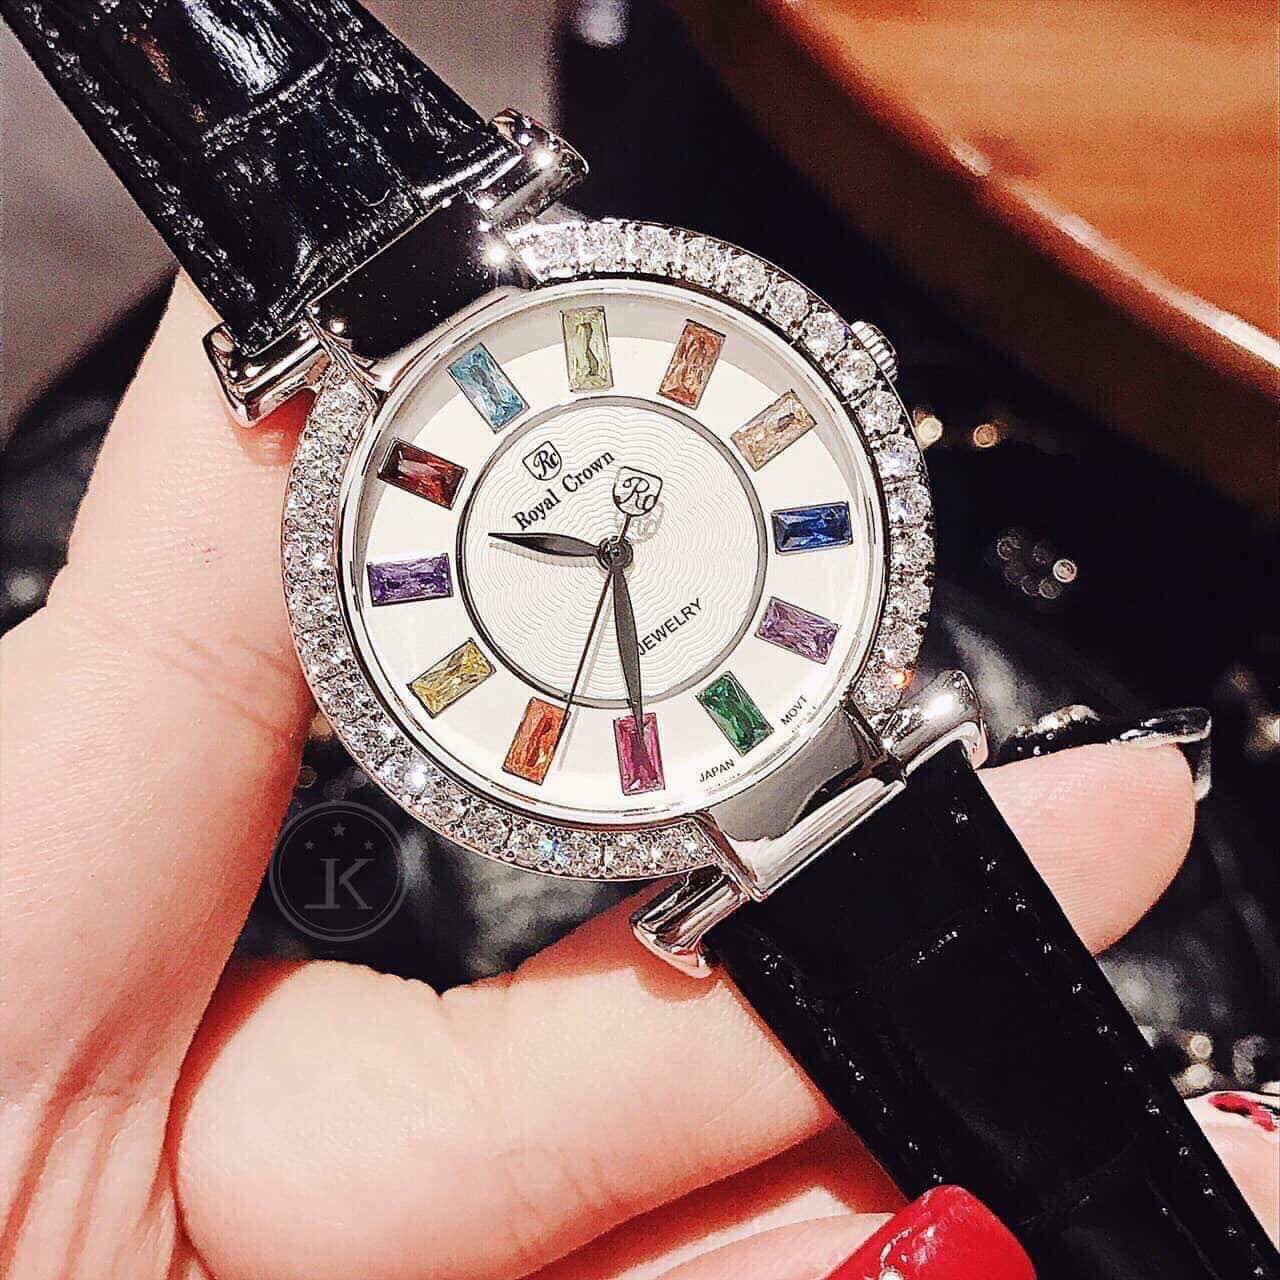 [HCM]Đồng hồ nữ dây da RoyalCrown mặt đính đá 7 màu- vỏ Trắng (Silver) dây da màu Đen (Red) size 36mm-RC07012 - Đồng hồ nữ chống nước đồng hồ nữ cao cấp